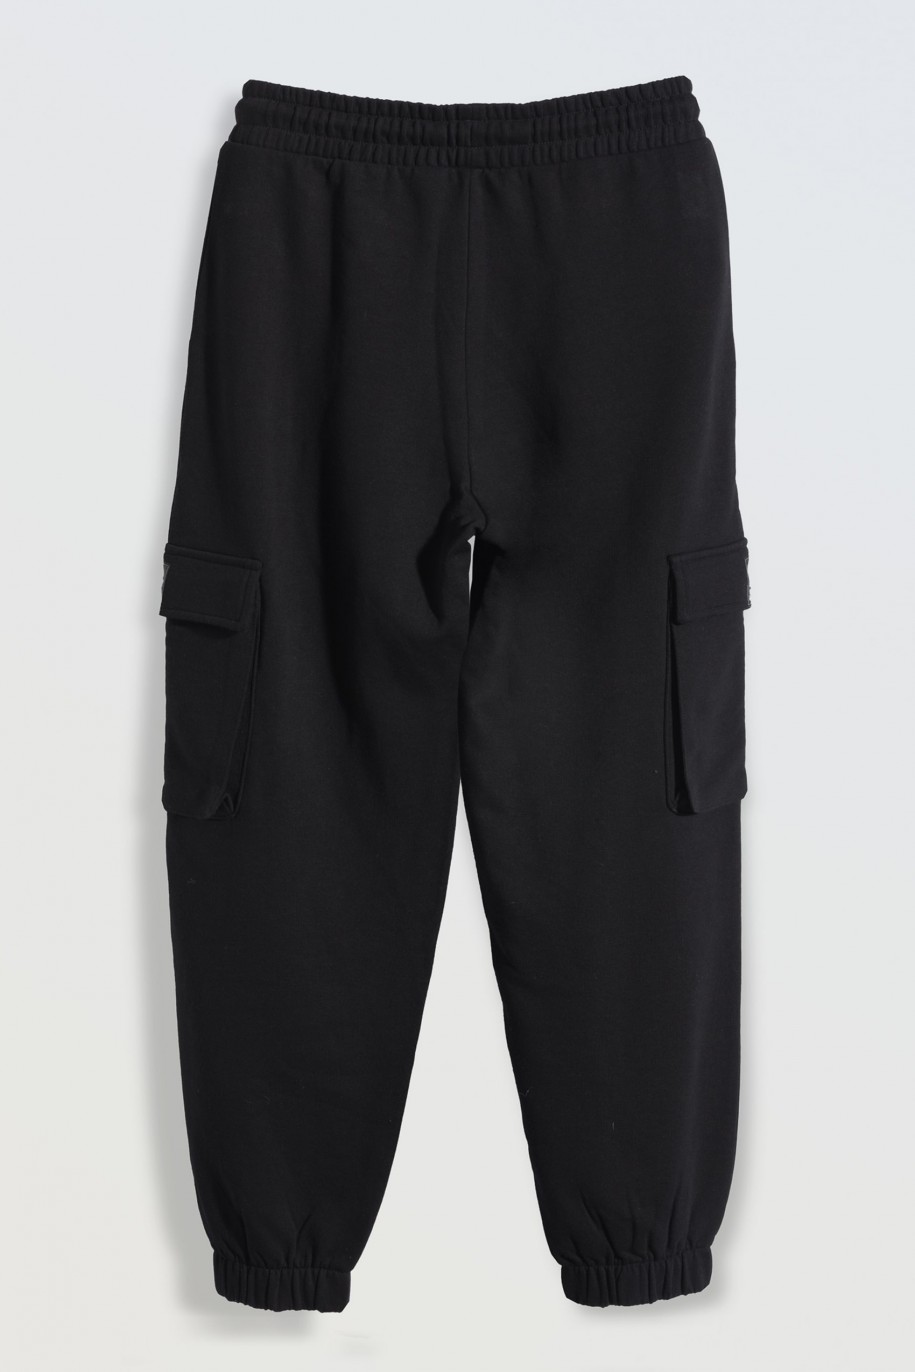 Czarne spodnie dresowe z przestrzennymi kieszeniami - 46273